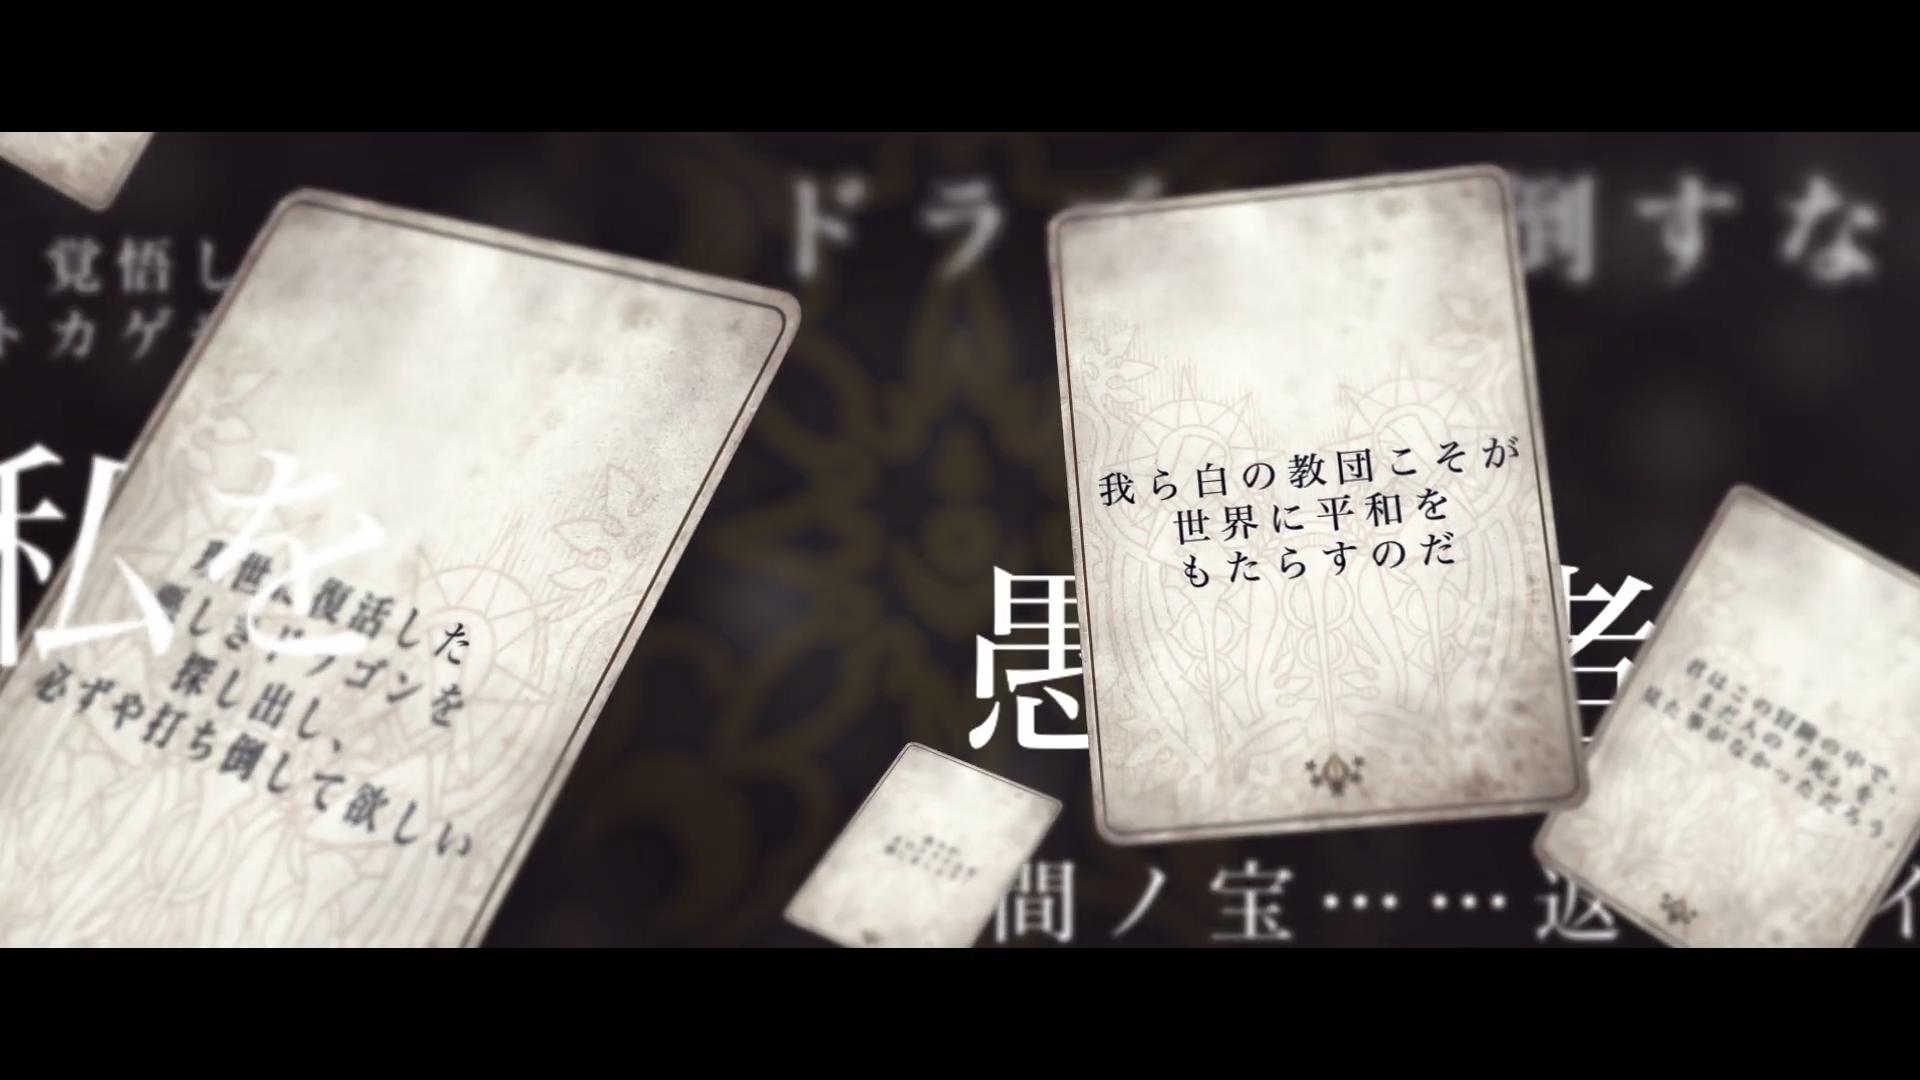 SE卡牌RPG新作公布先导预告片 横尾太郎参与制作